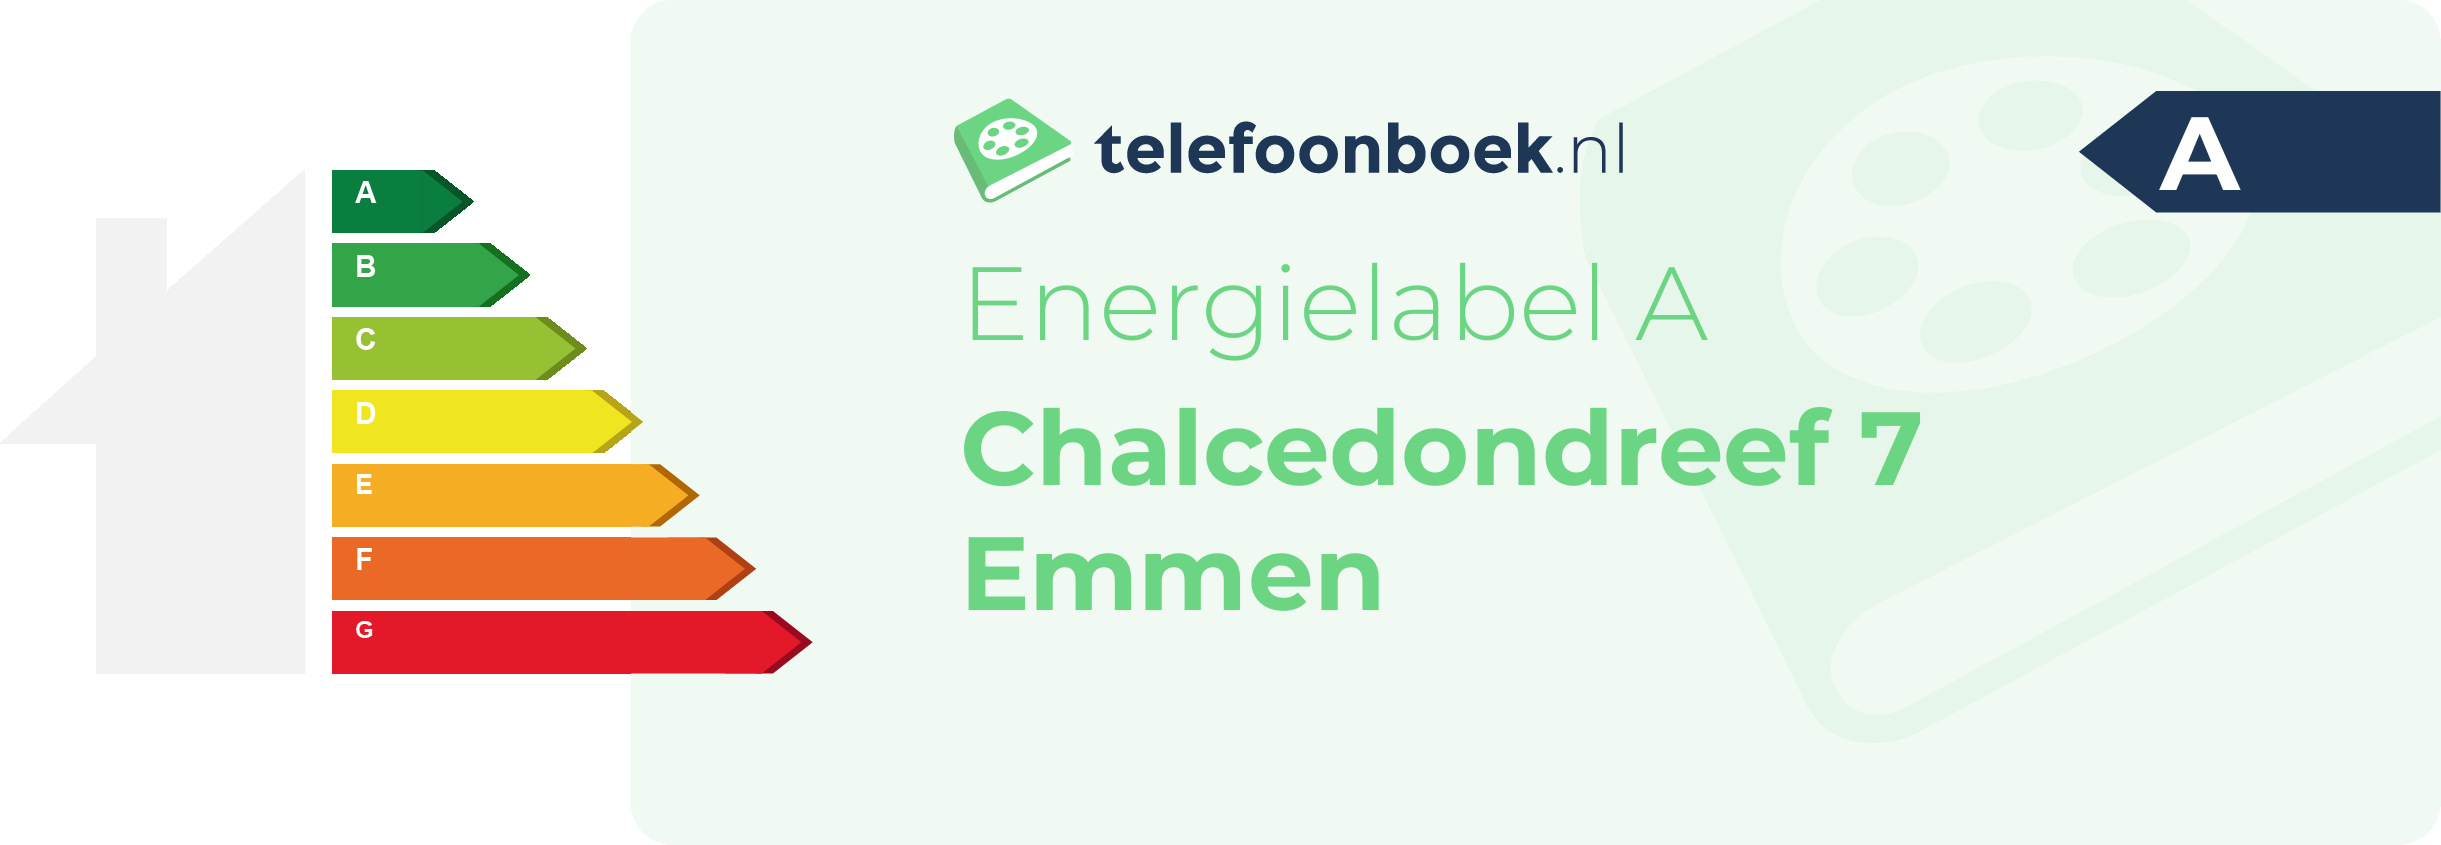 Energielabel Chalcedondreef 7 Emmen